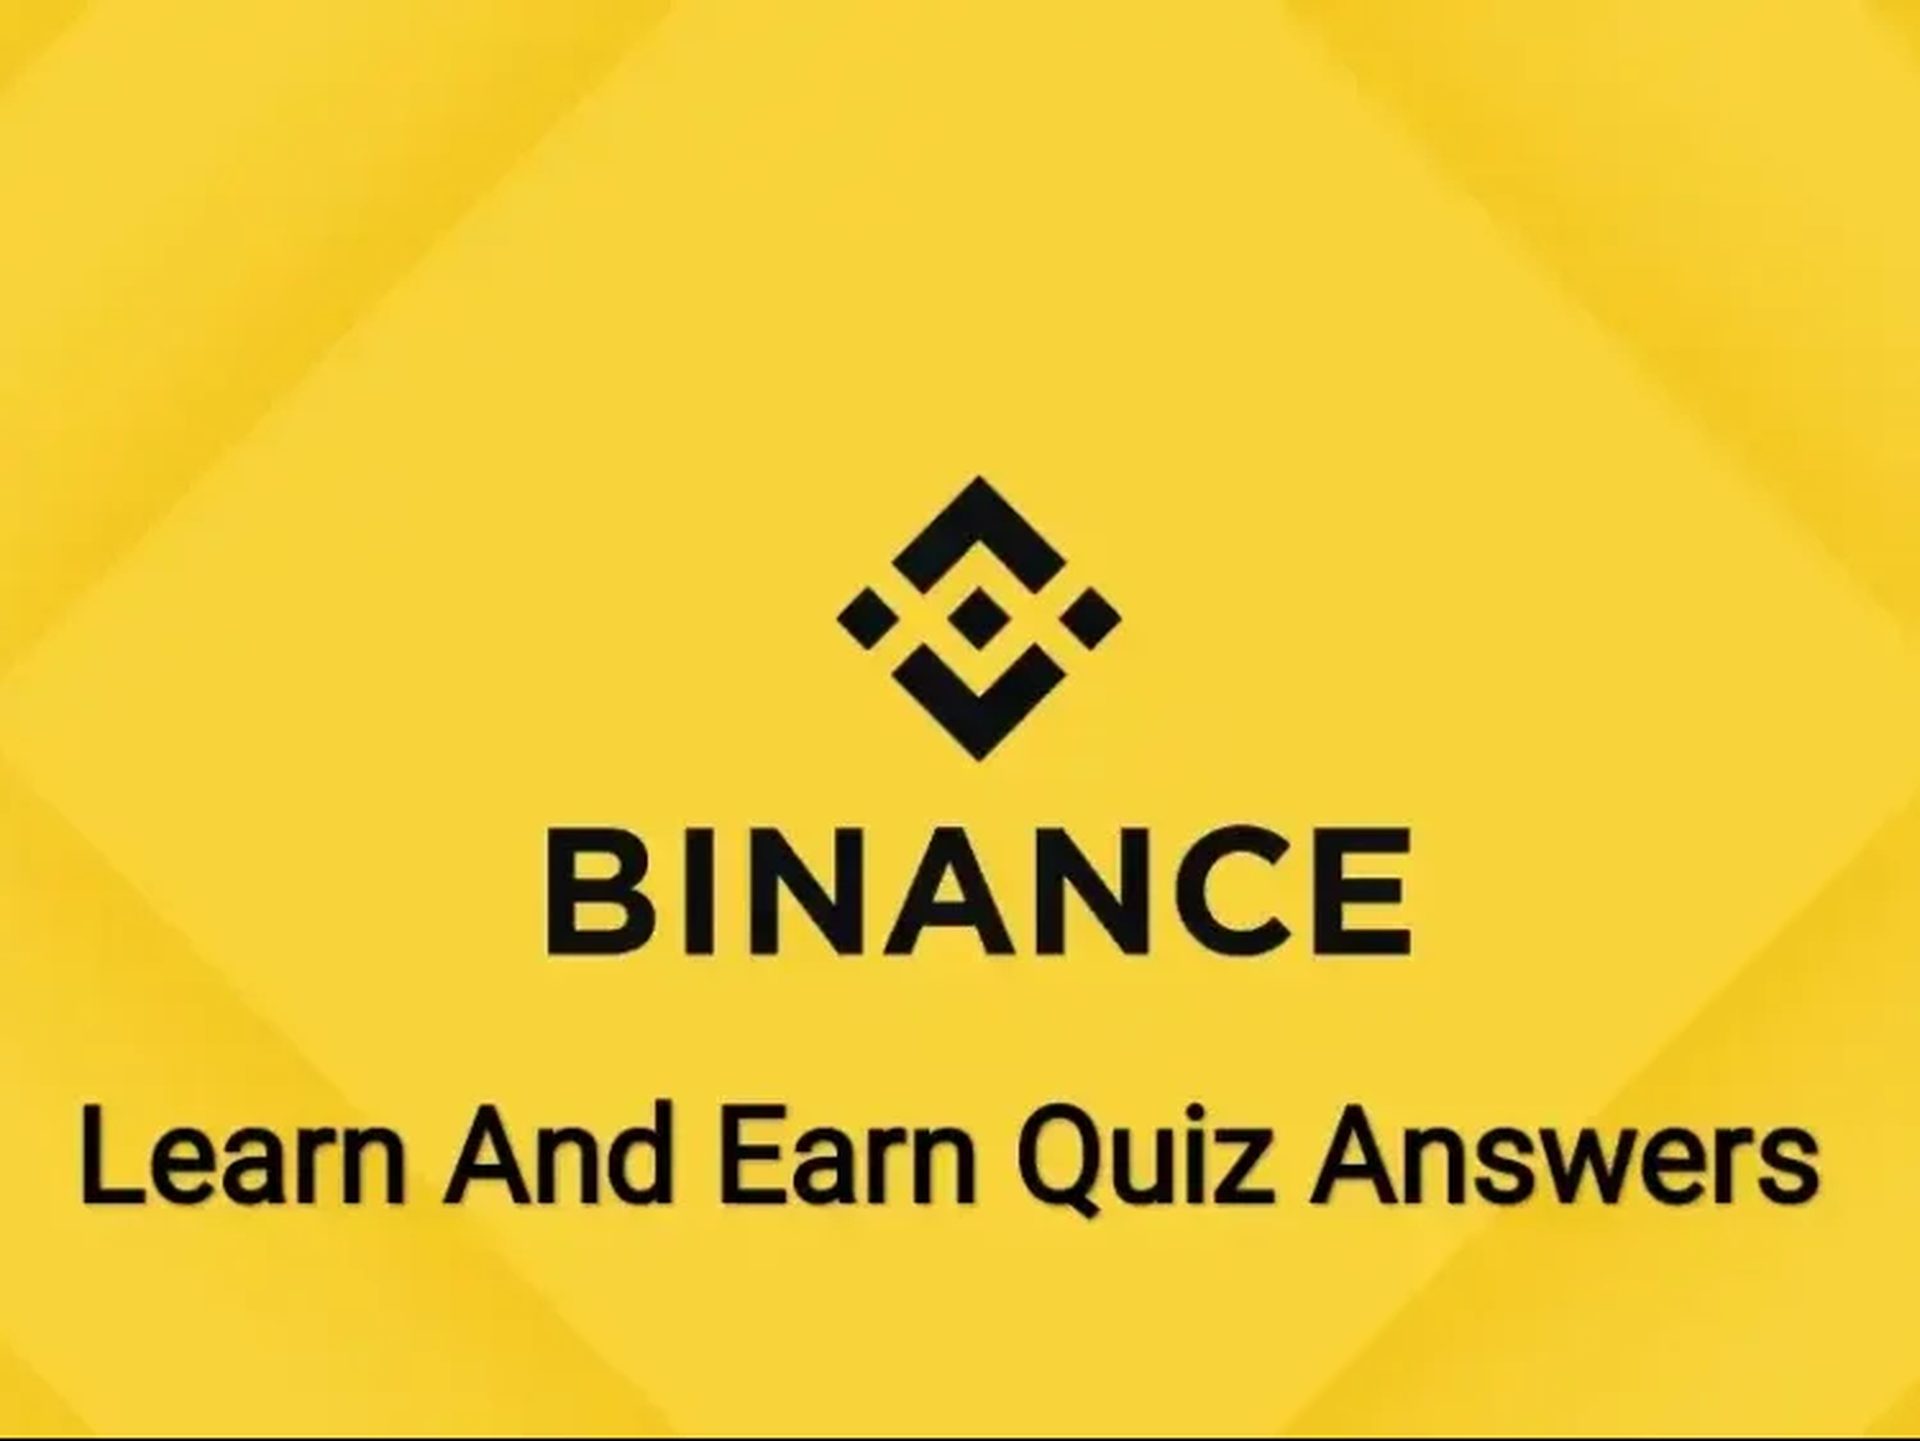 LDO Binance quiz answers: Binance Learn and Earn Lido Quiz